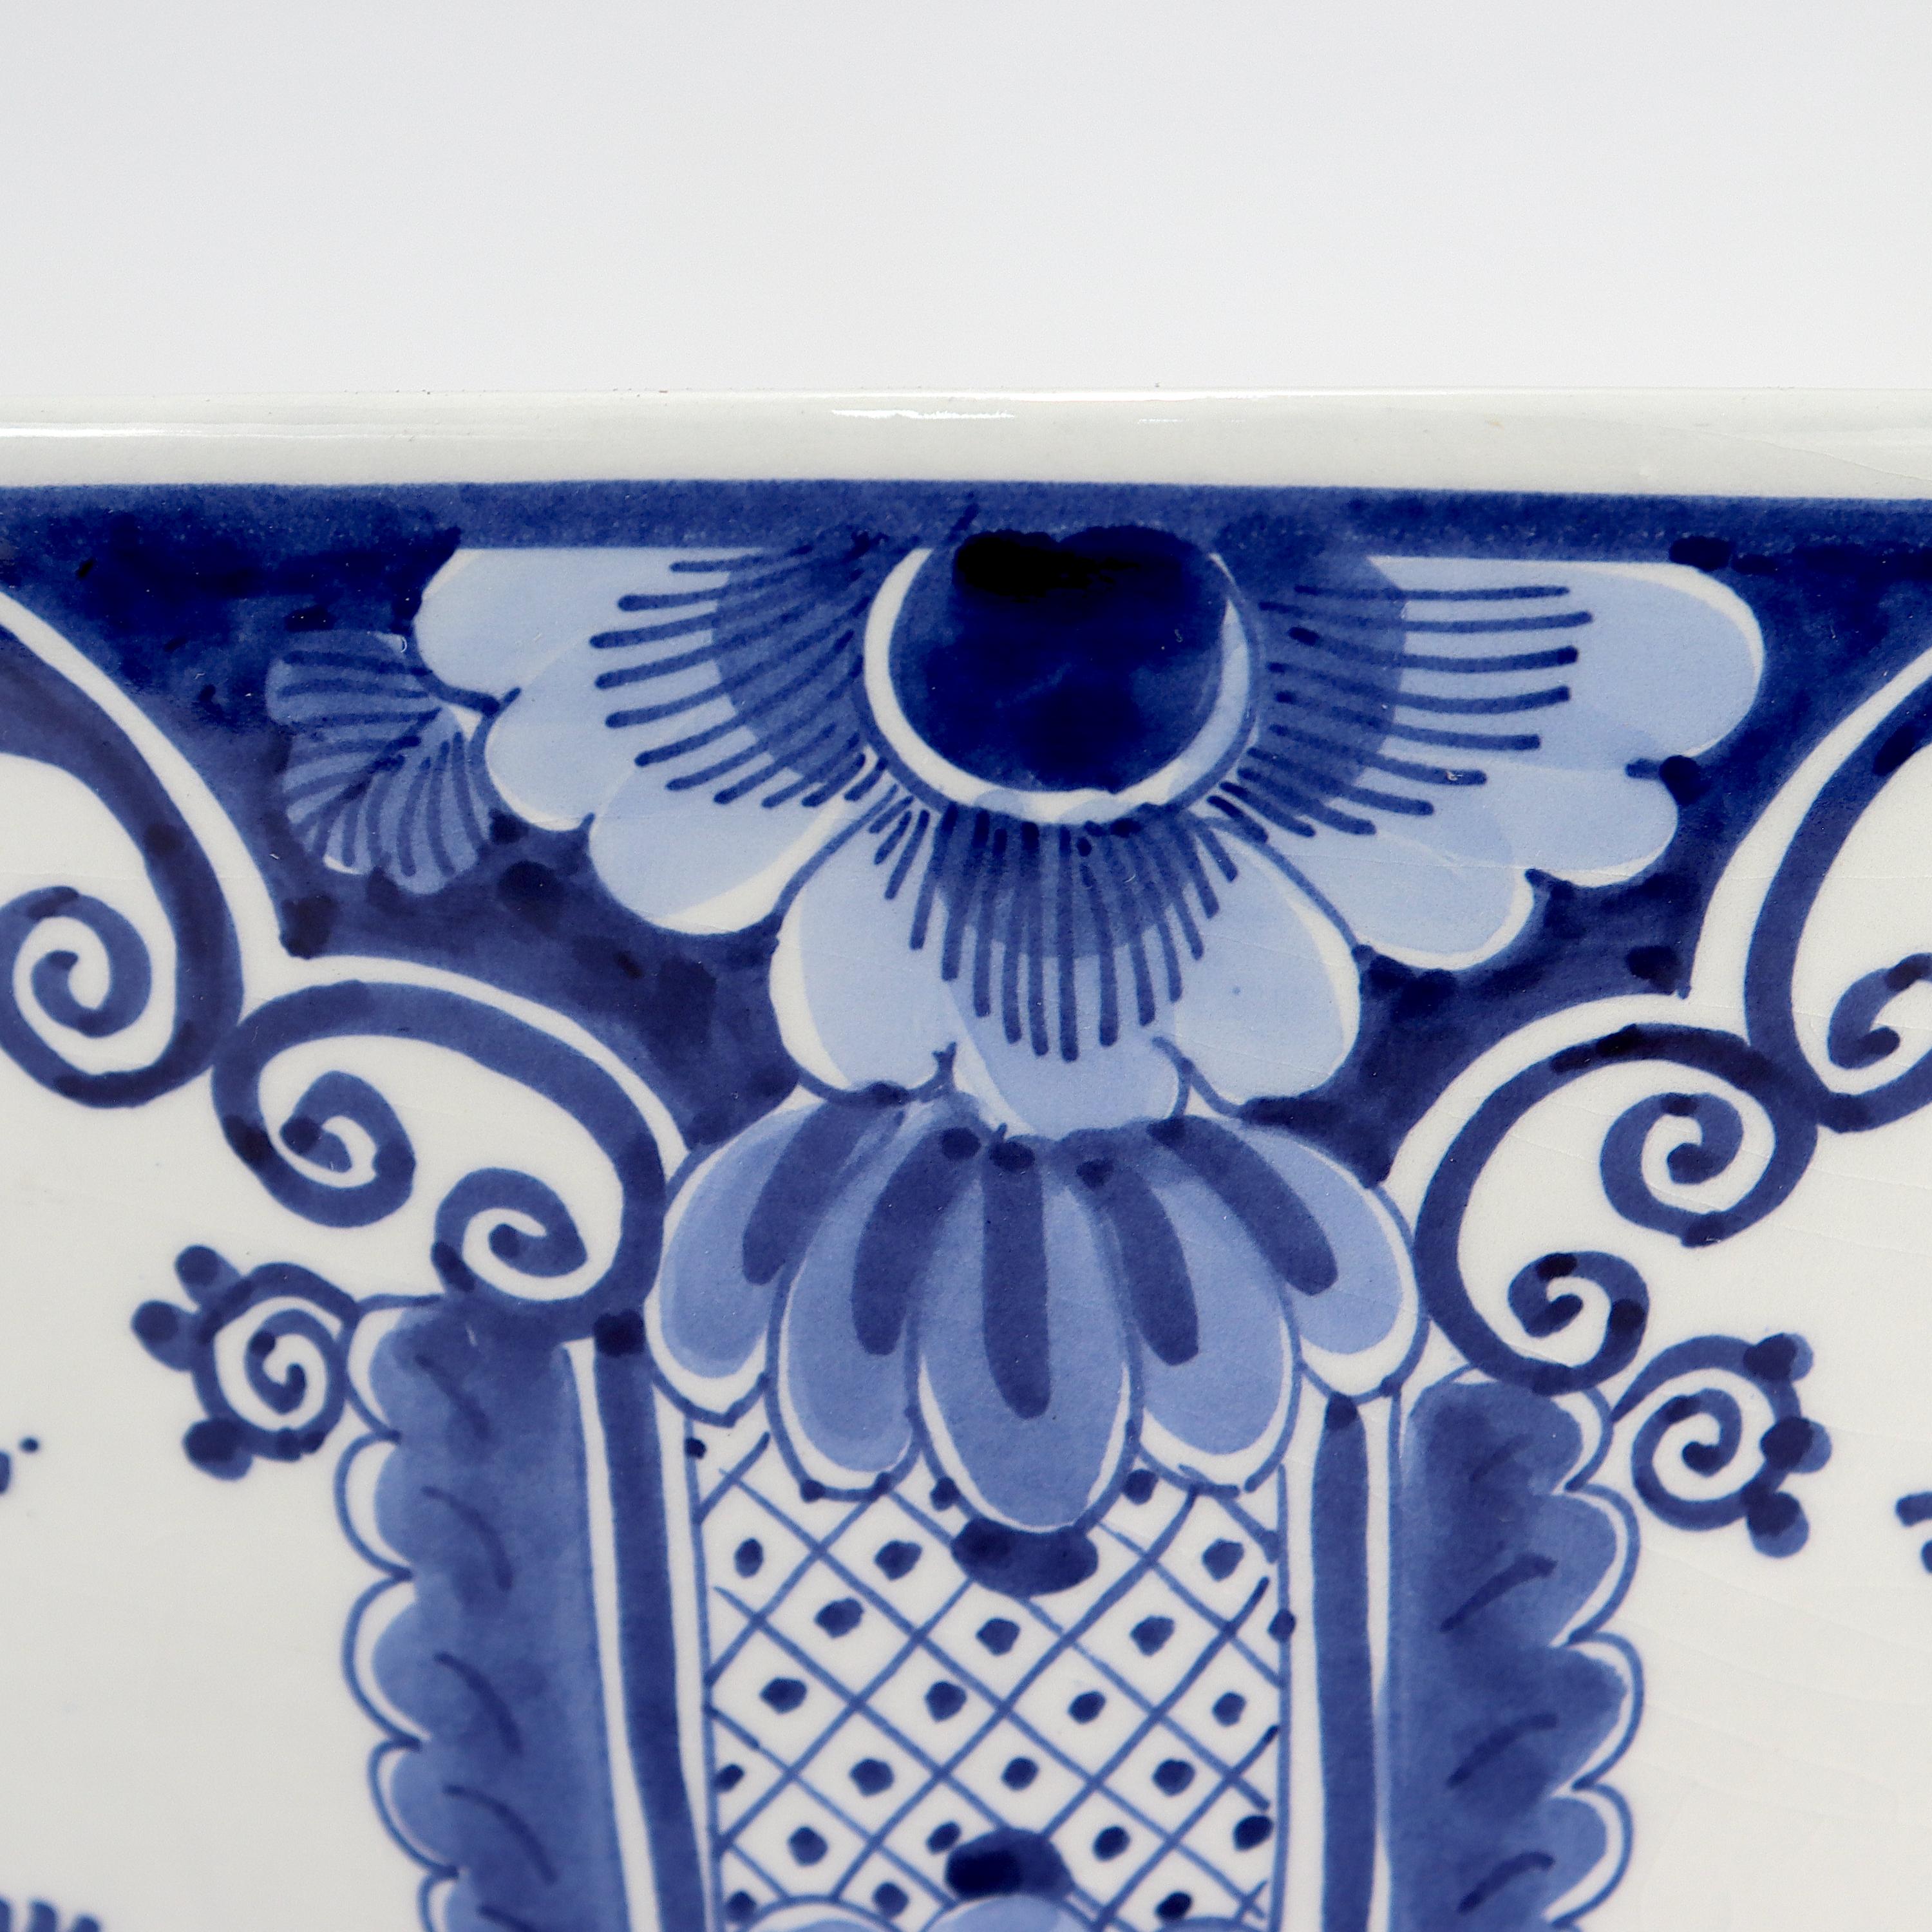 Vintage De Porceleyne Fles Dutch Delft Blue & White Pottery Punch Bowl 1